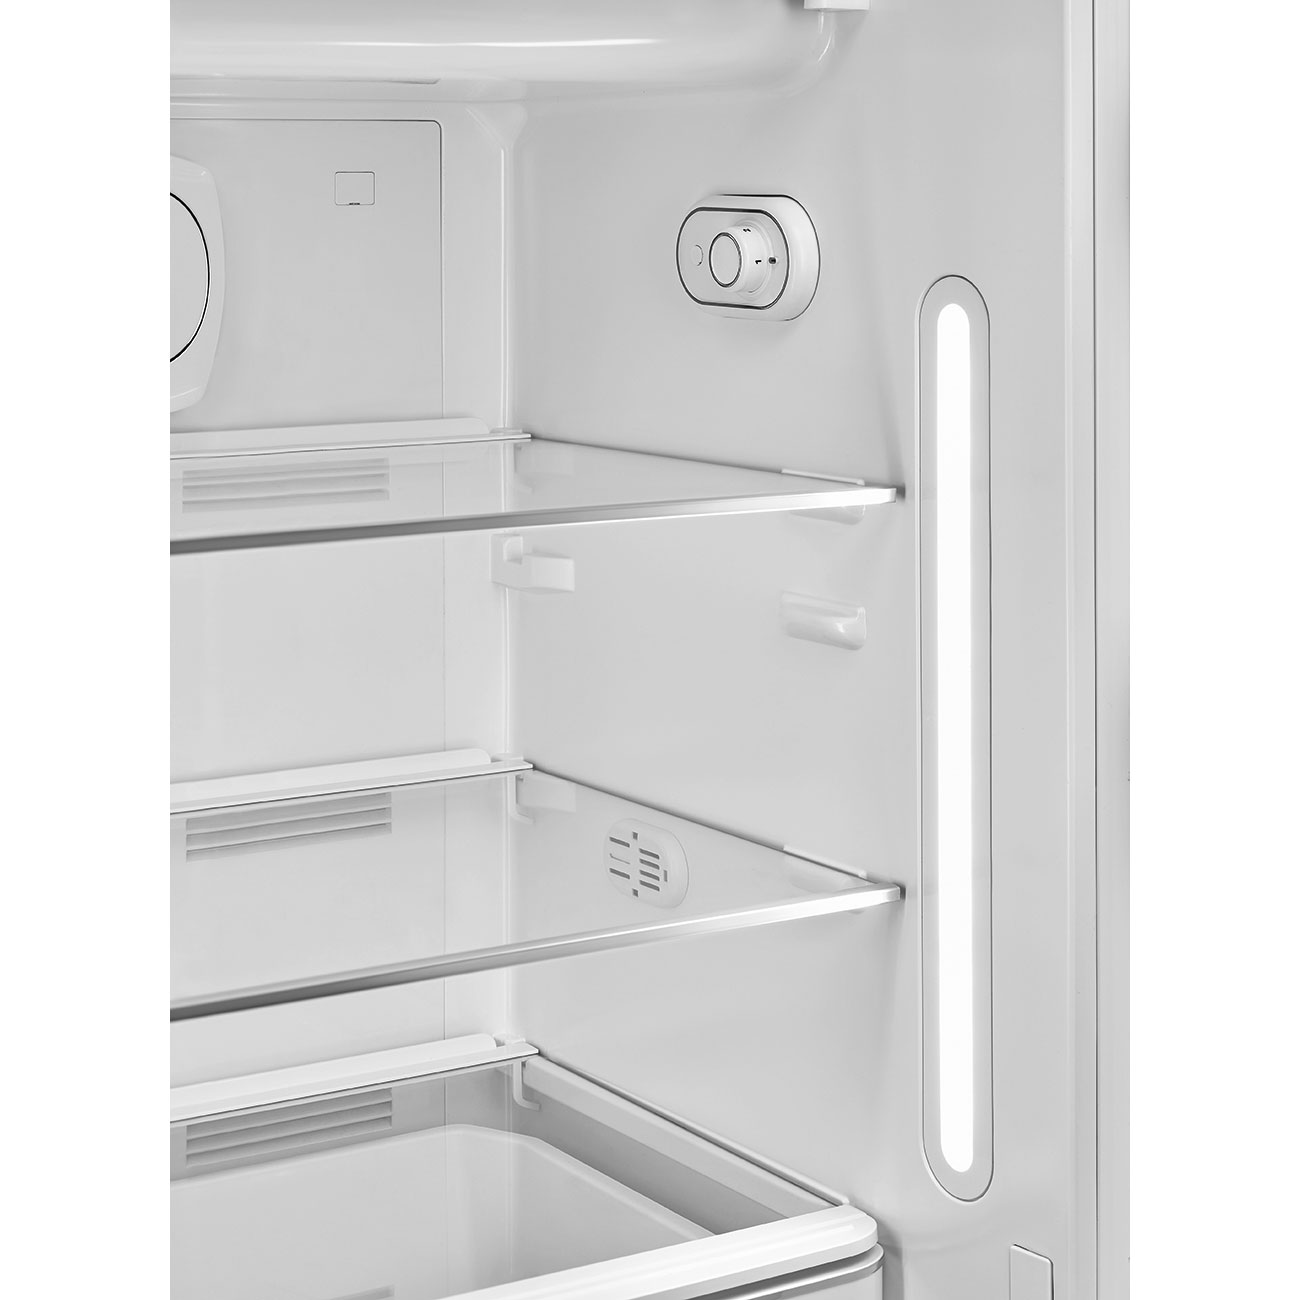 Cream refrigerator - Smeg_7